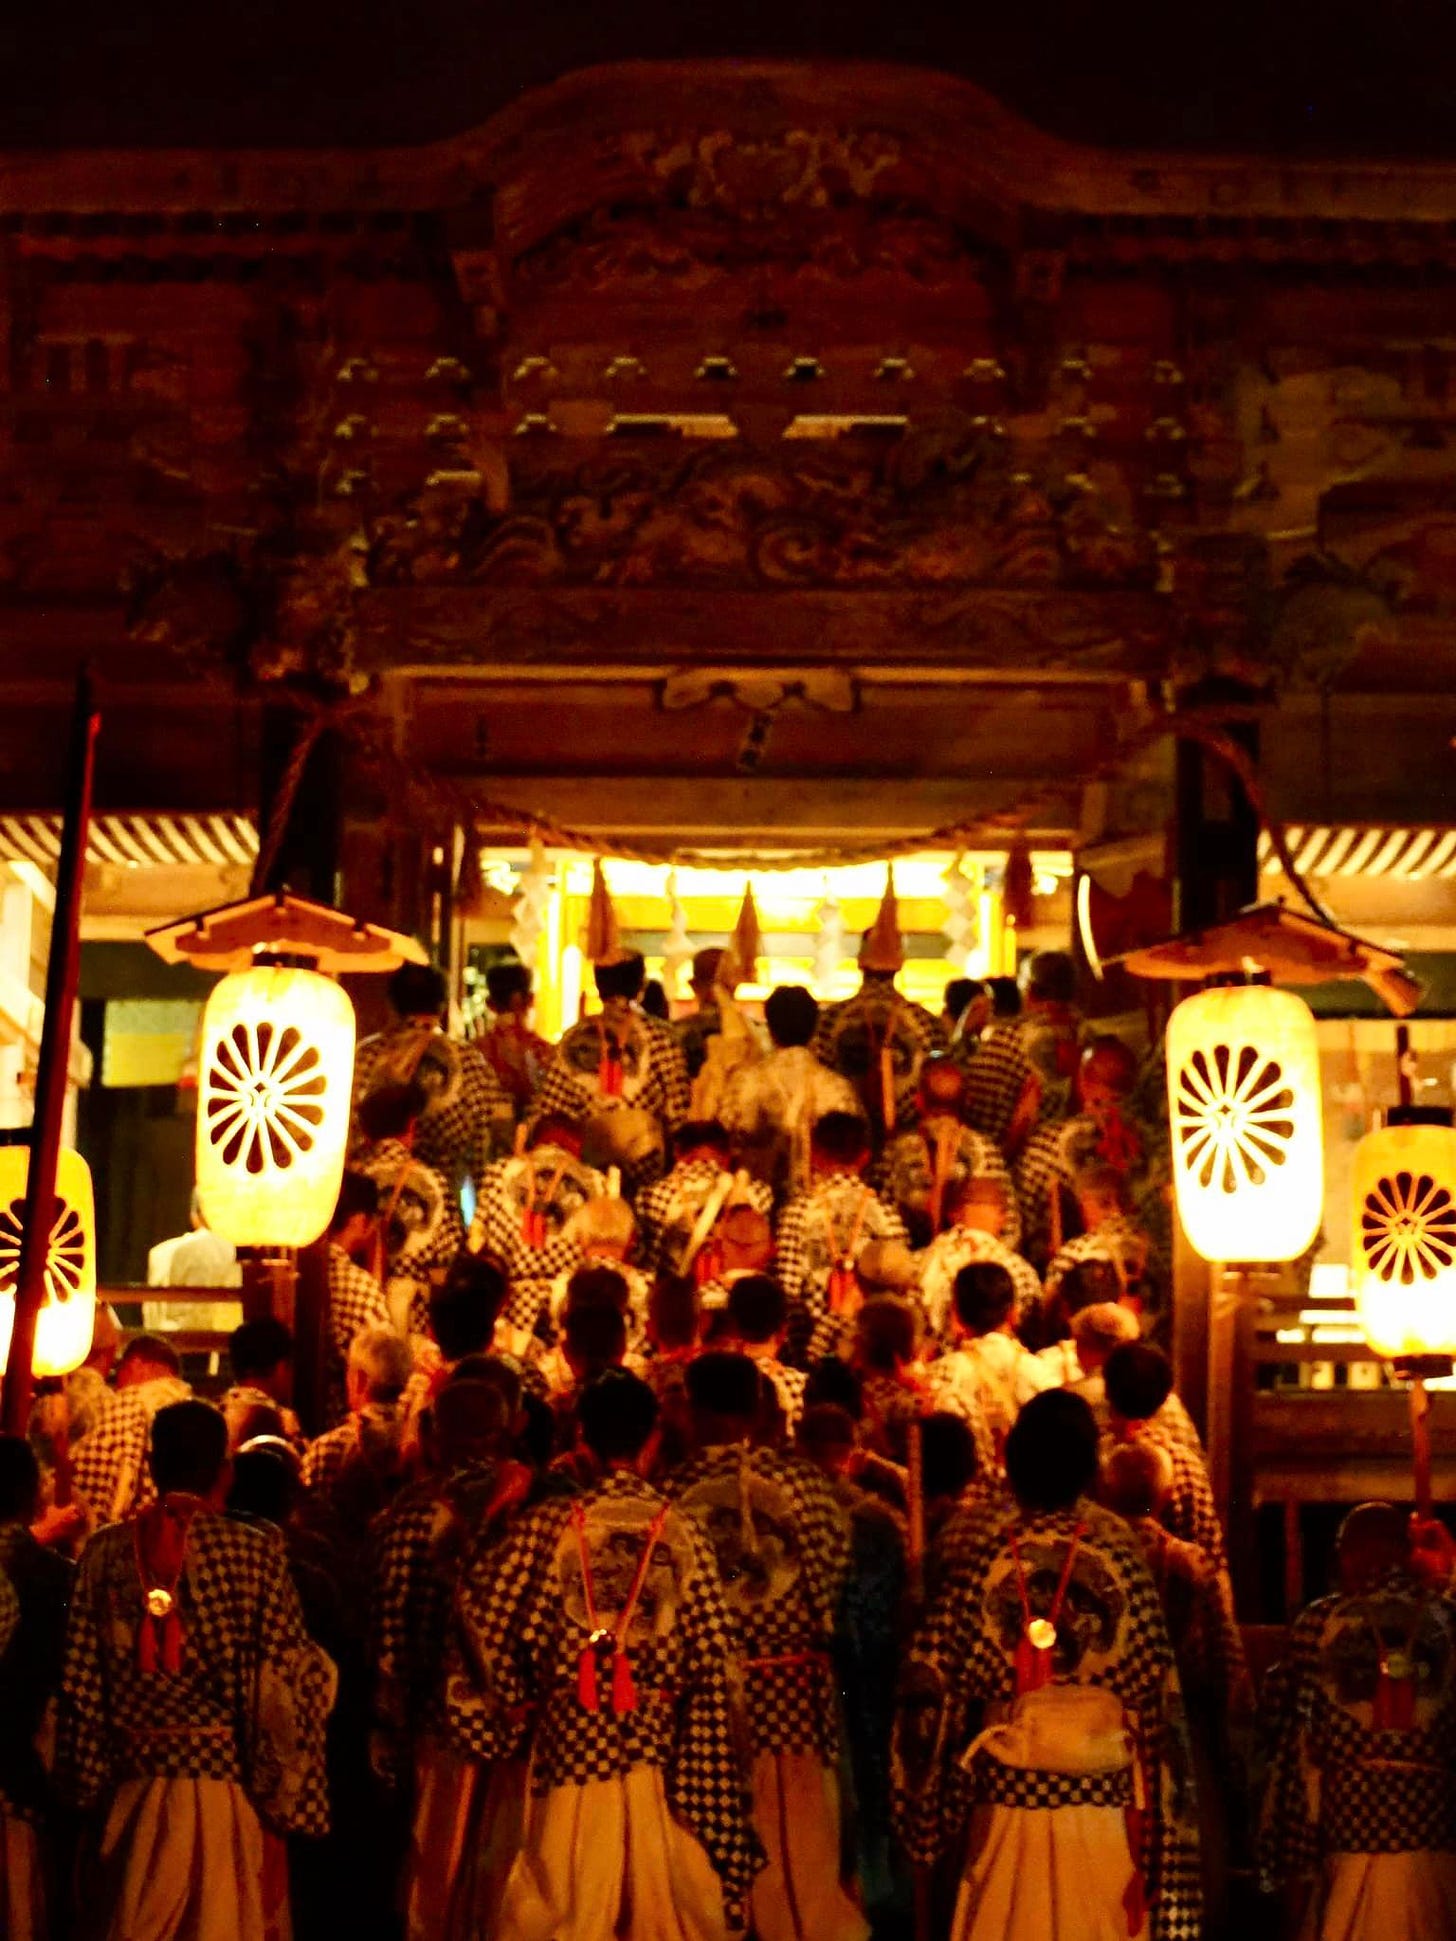 May be an image of 2 people, crowd and Fushimi Inari Taisha